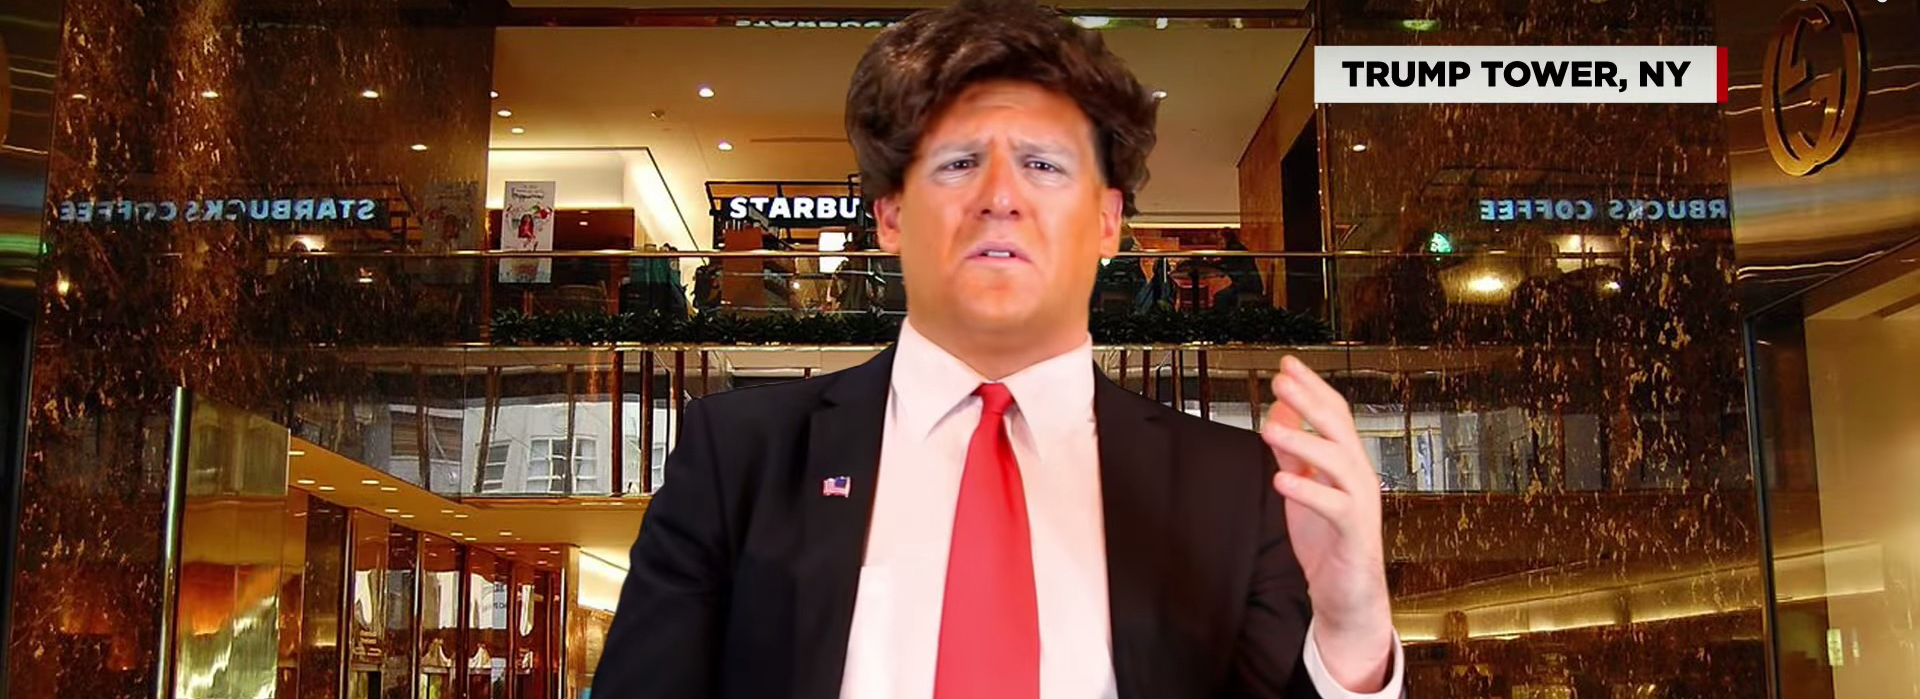 Donald Trump comedy skit- FA 1